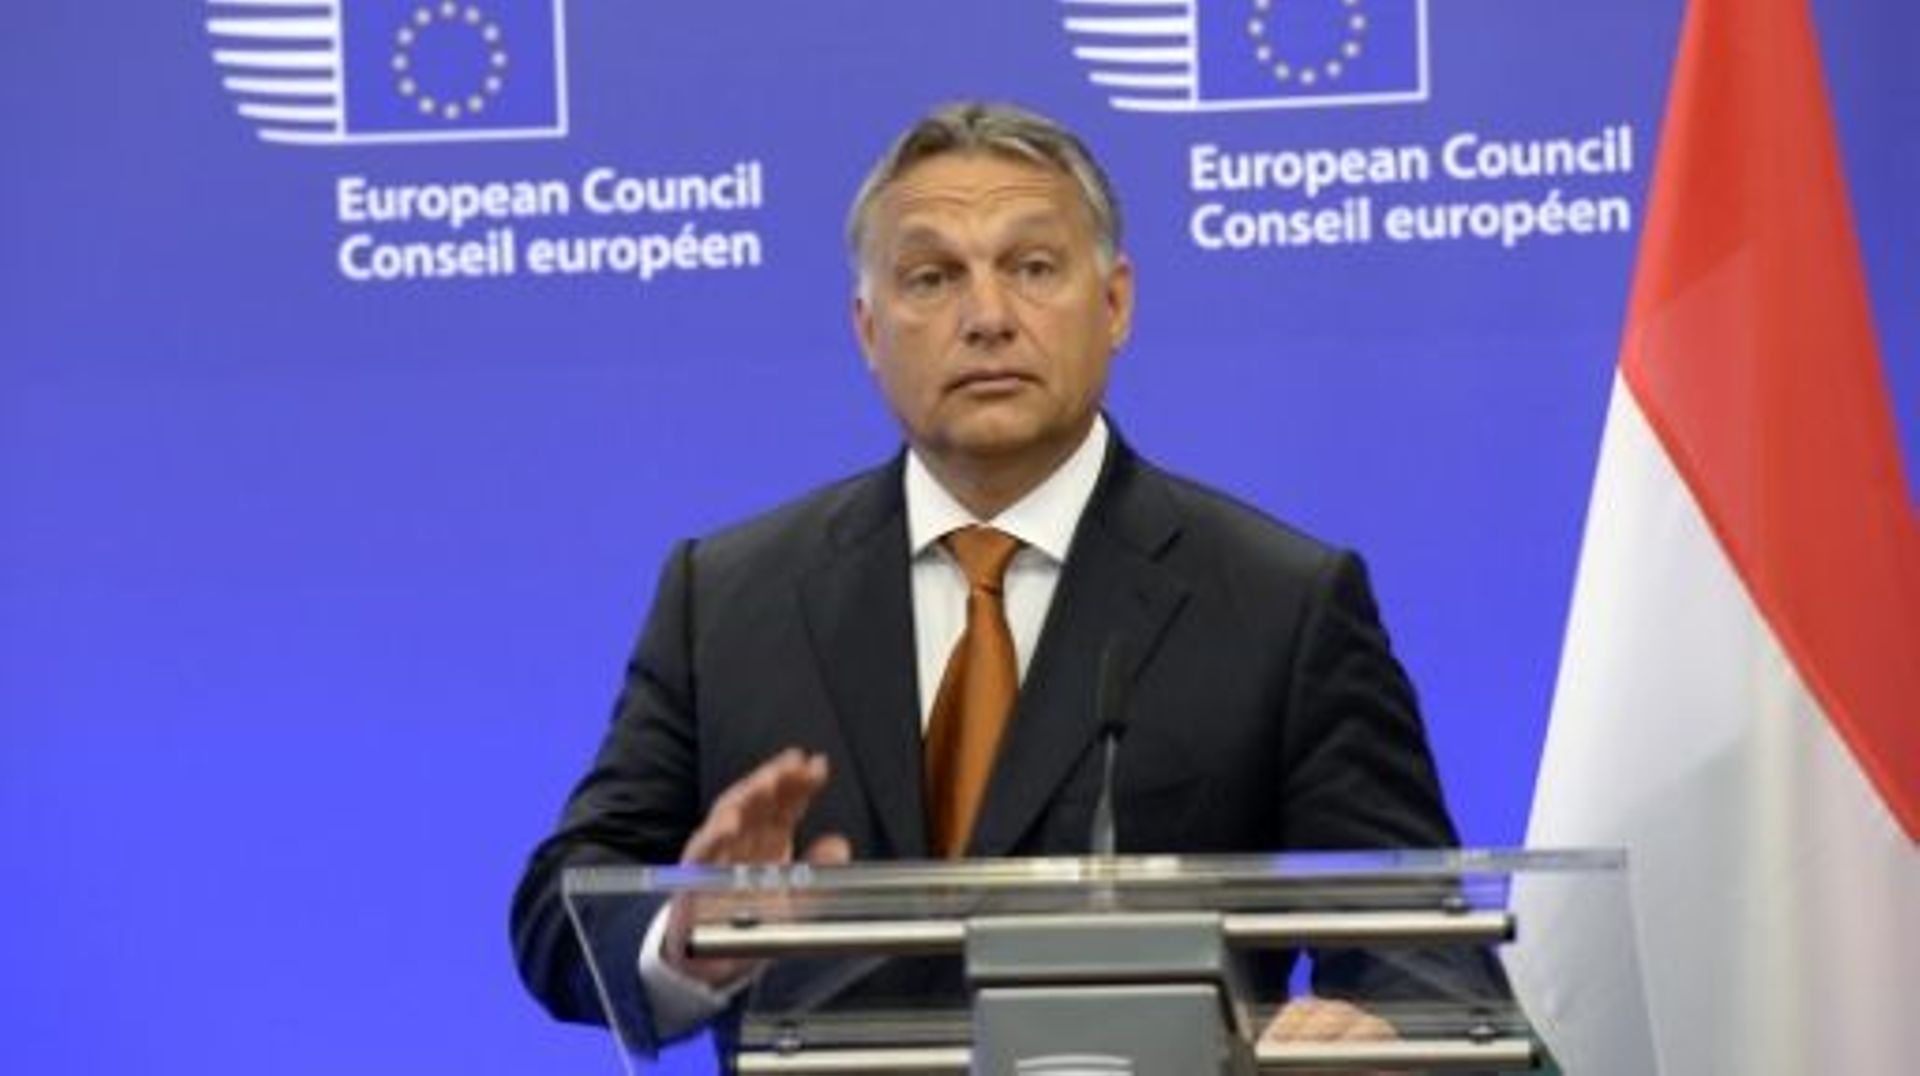 Le Premier ministre hongrois Viktor Orban, à Bruxelles le 3 septembre 2015